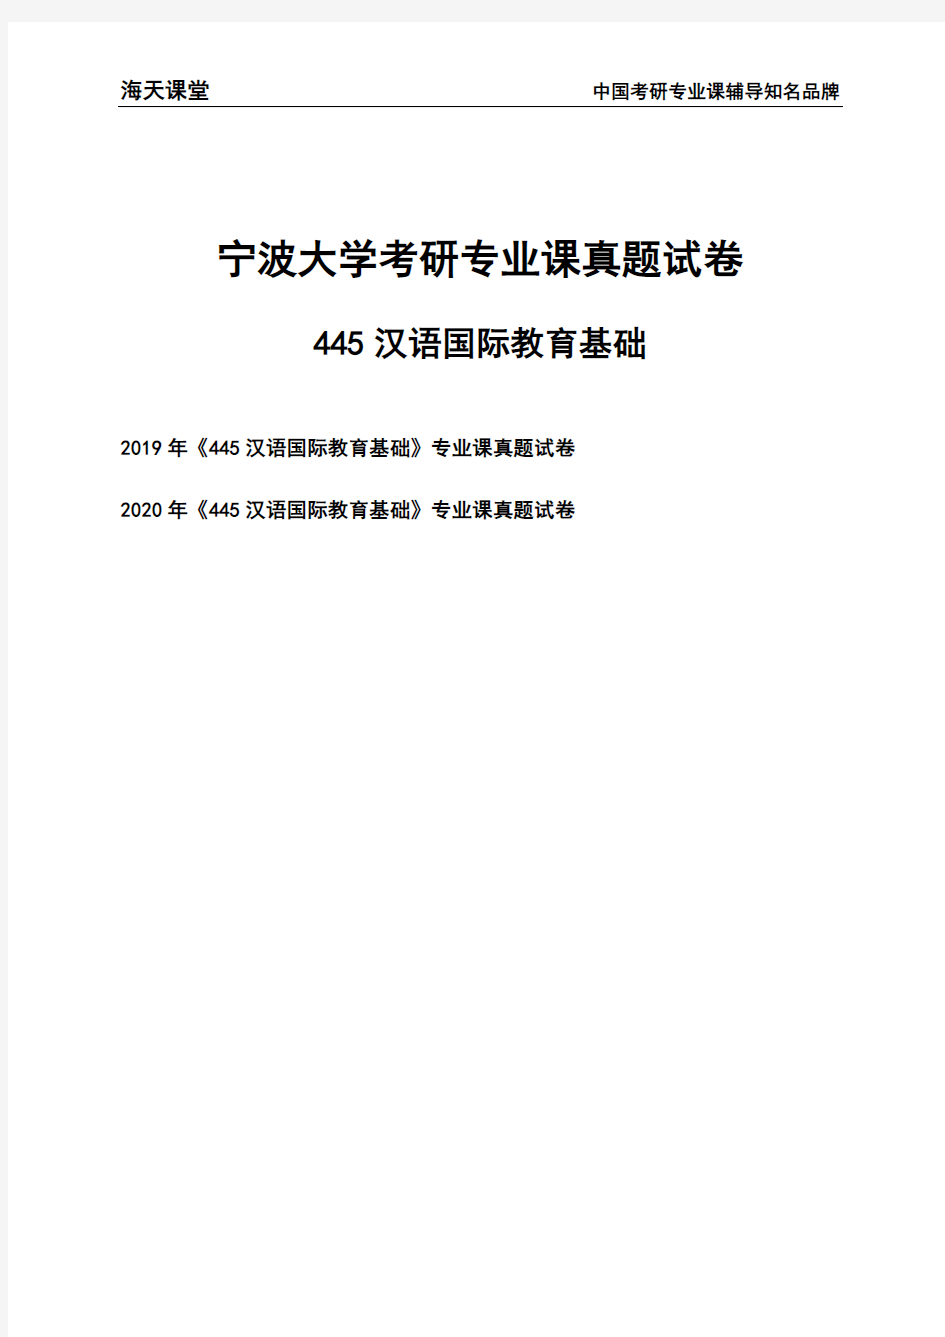 宁波大学《445汉语国际教育基础》考研专业课真题试卷